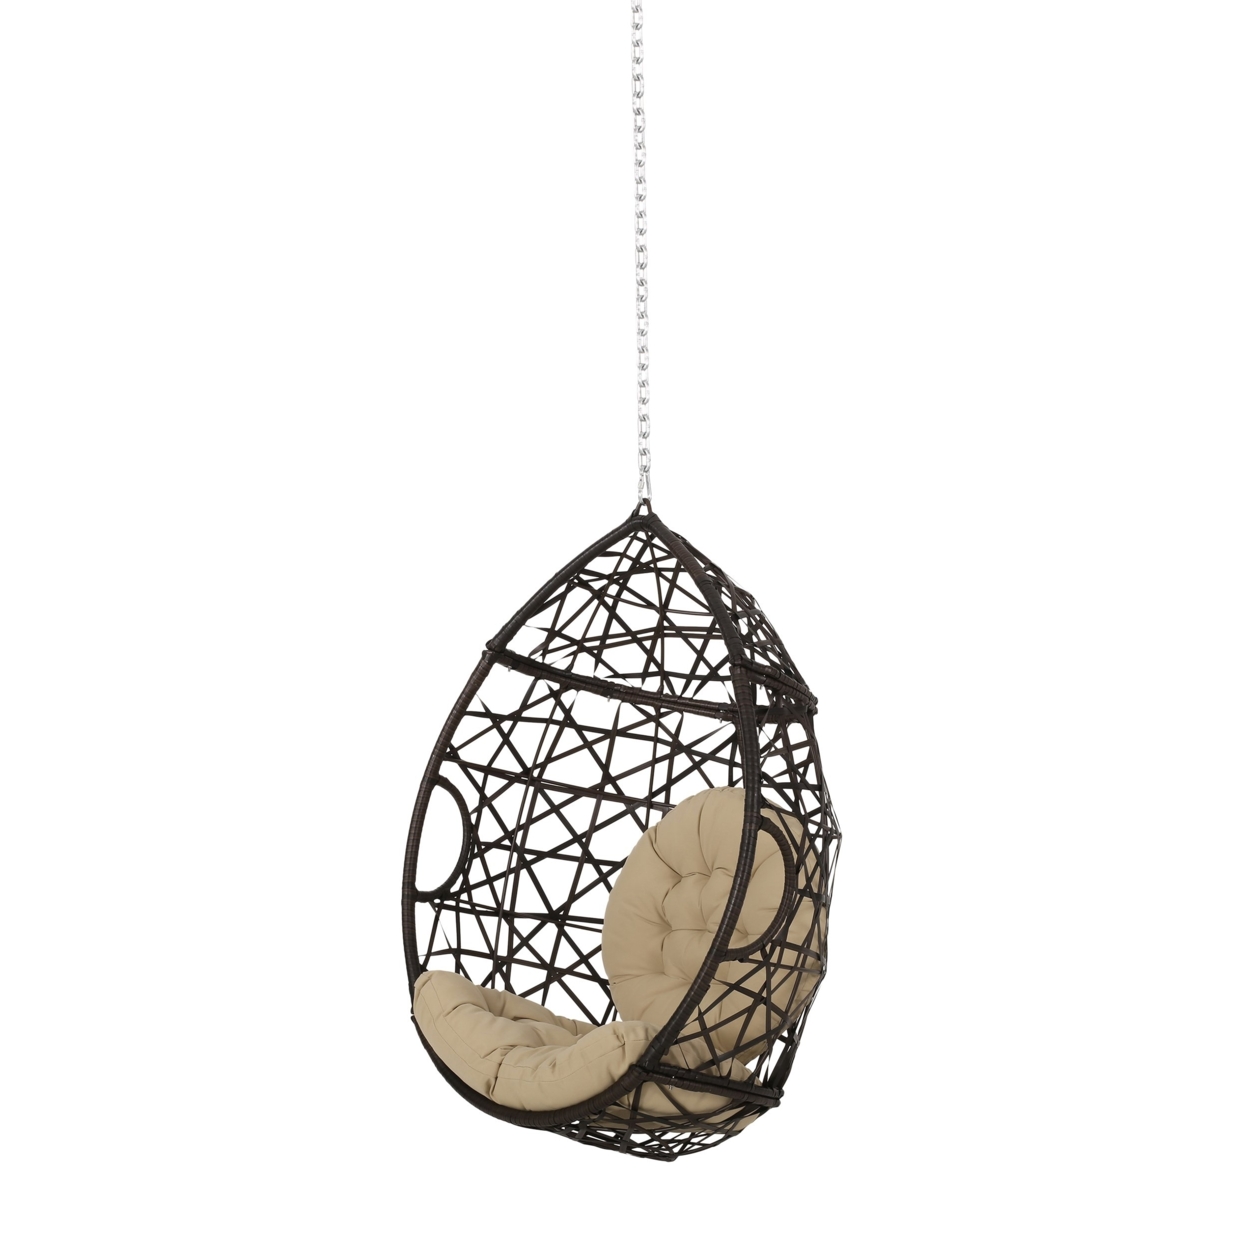 Layden Indoor/Outdoor Wicker Hanging Egg / Teardrop Chair (NO STAND) - Multi-brown/tan